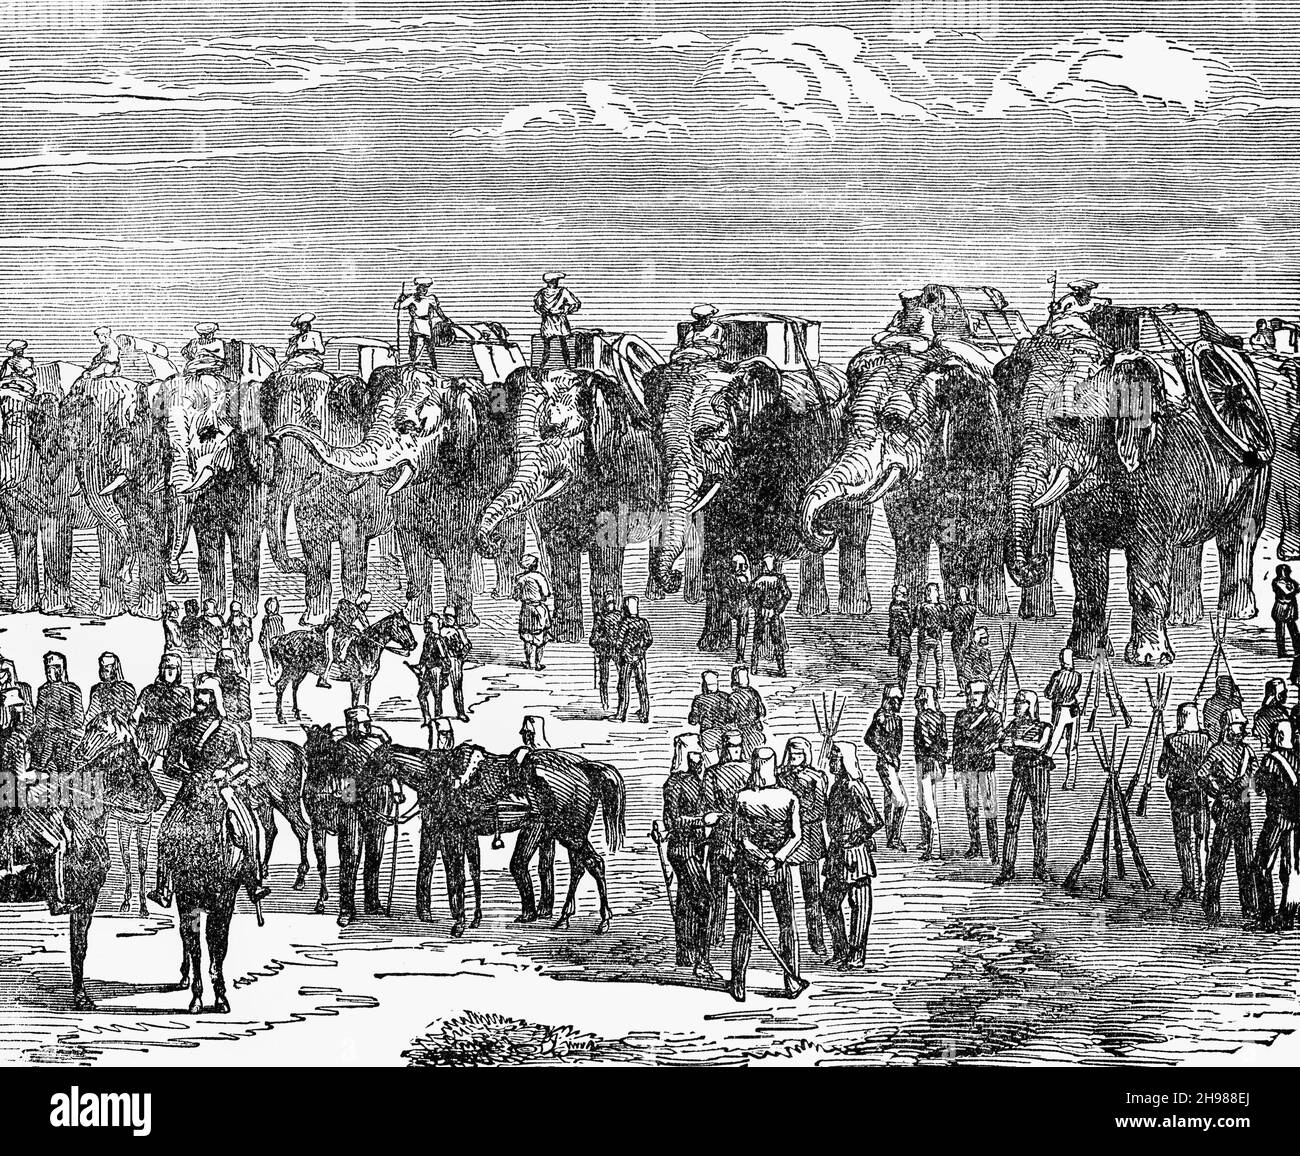 Eine Illustration der Britisch-Indischen Armee aus dem späten 19th. Jahrhundert auf dem marsch. Sie war verantwortlich für die Verteidigung des Britisch-Indischen Reiches und der fürstlichen Staaten, die auch ihre eigenen Armeen haben konnten. Stockfoto